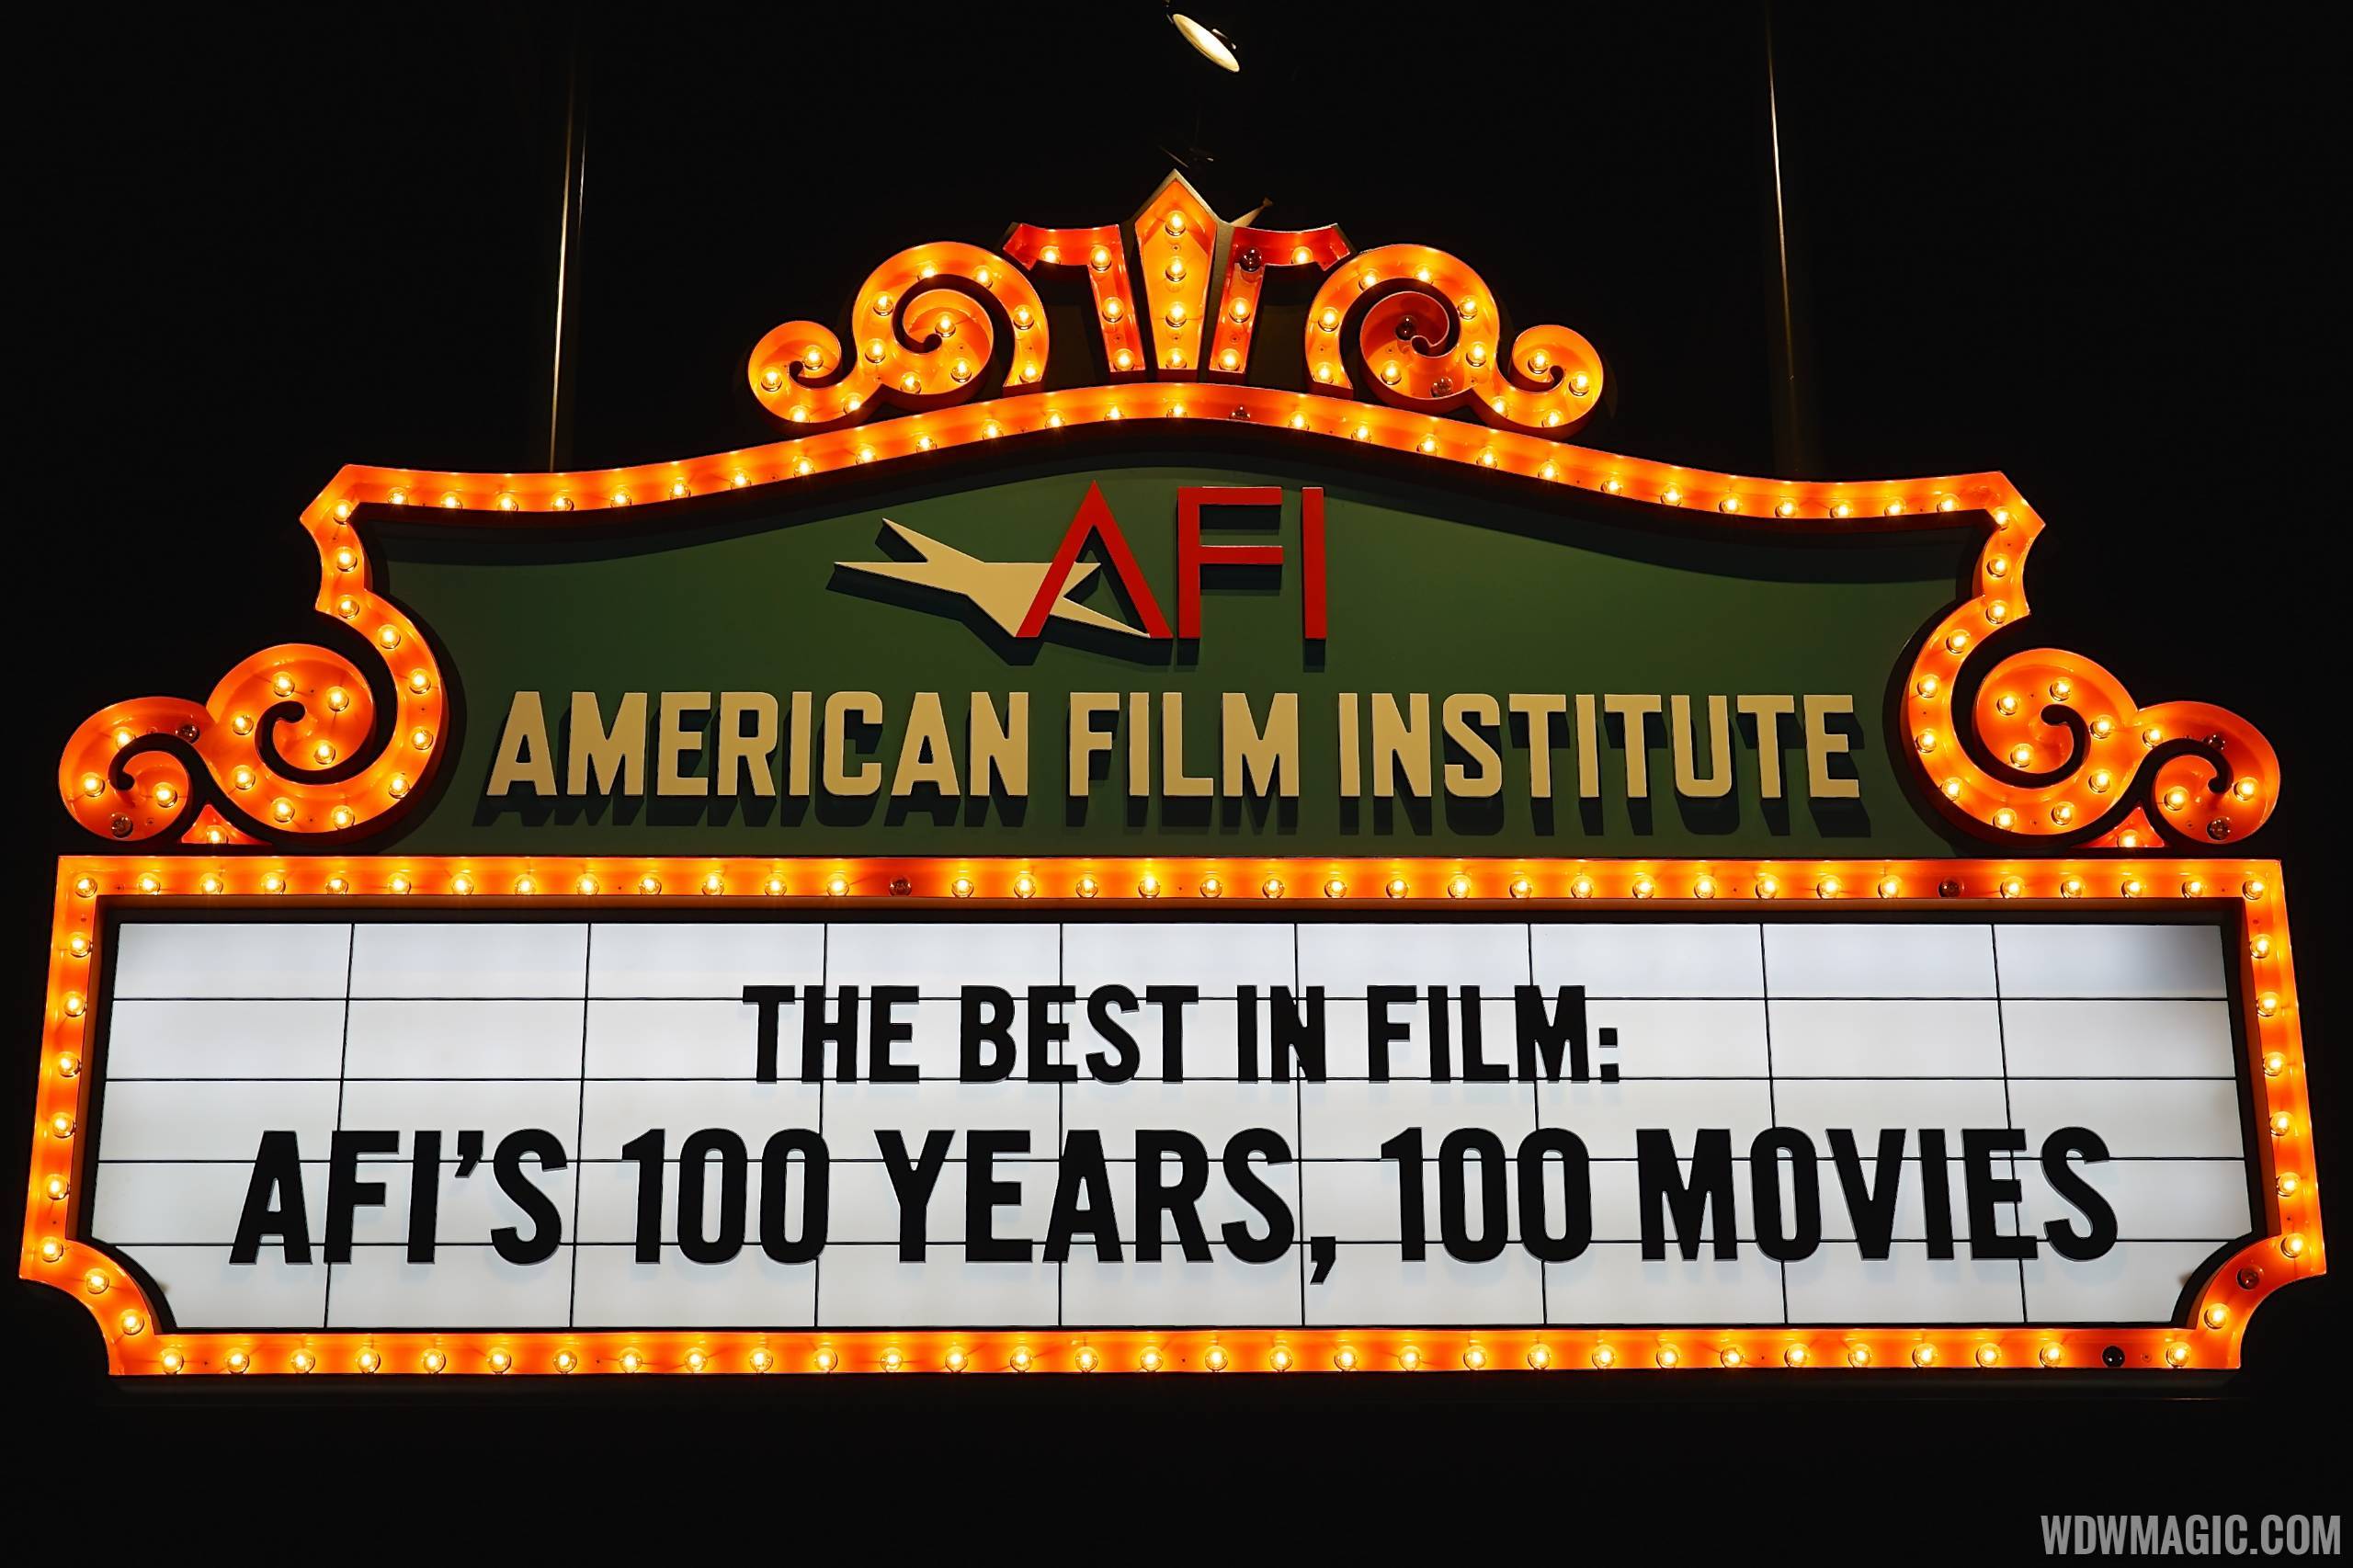 American Film Institute exhibit - 100 years signage